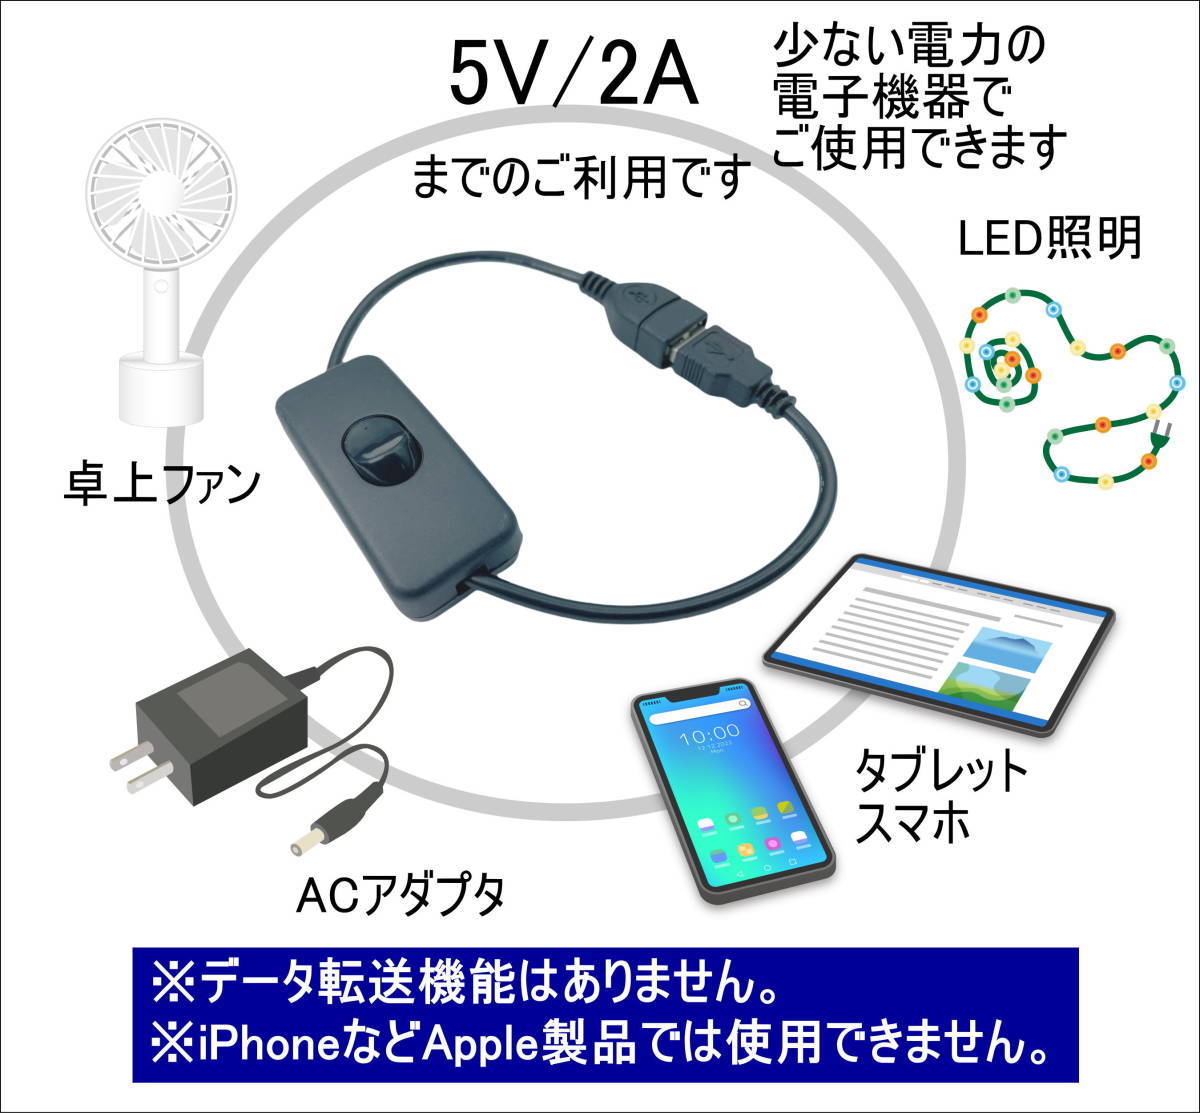 ☆【2本】USB電源 ON-OFFスイッチ付き 延長ケーブル 5V/2A 30cm USBケーブル(オス/メス) LED照明や小型ファンなどの小電力機器用